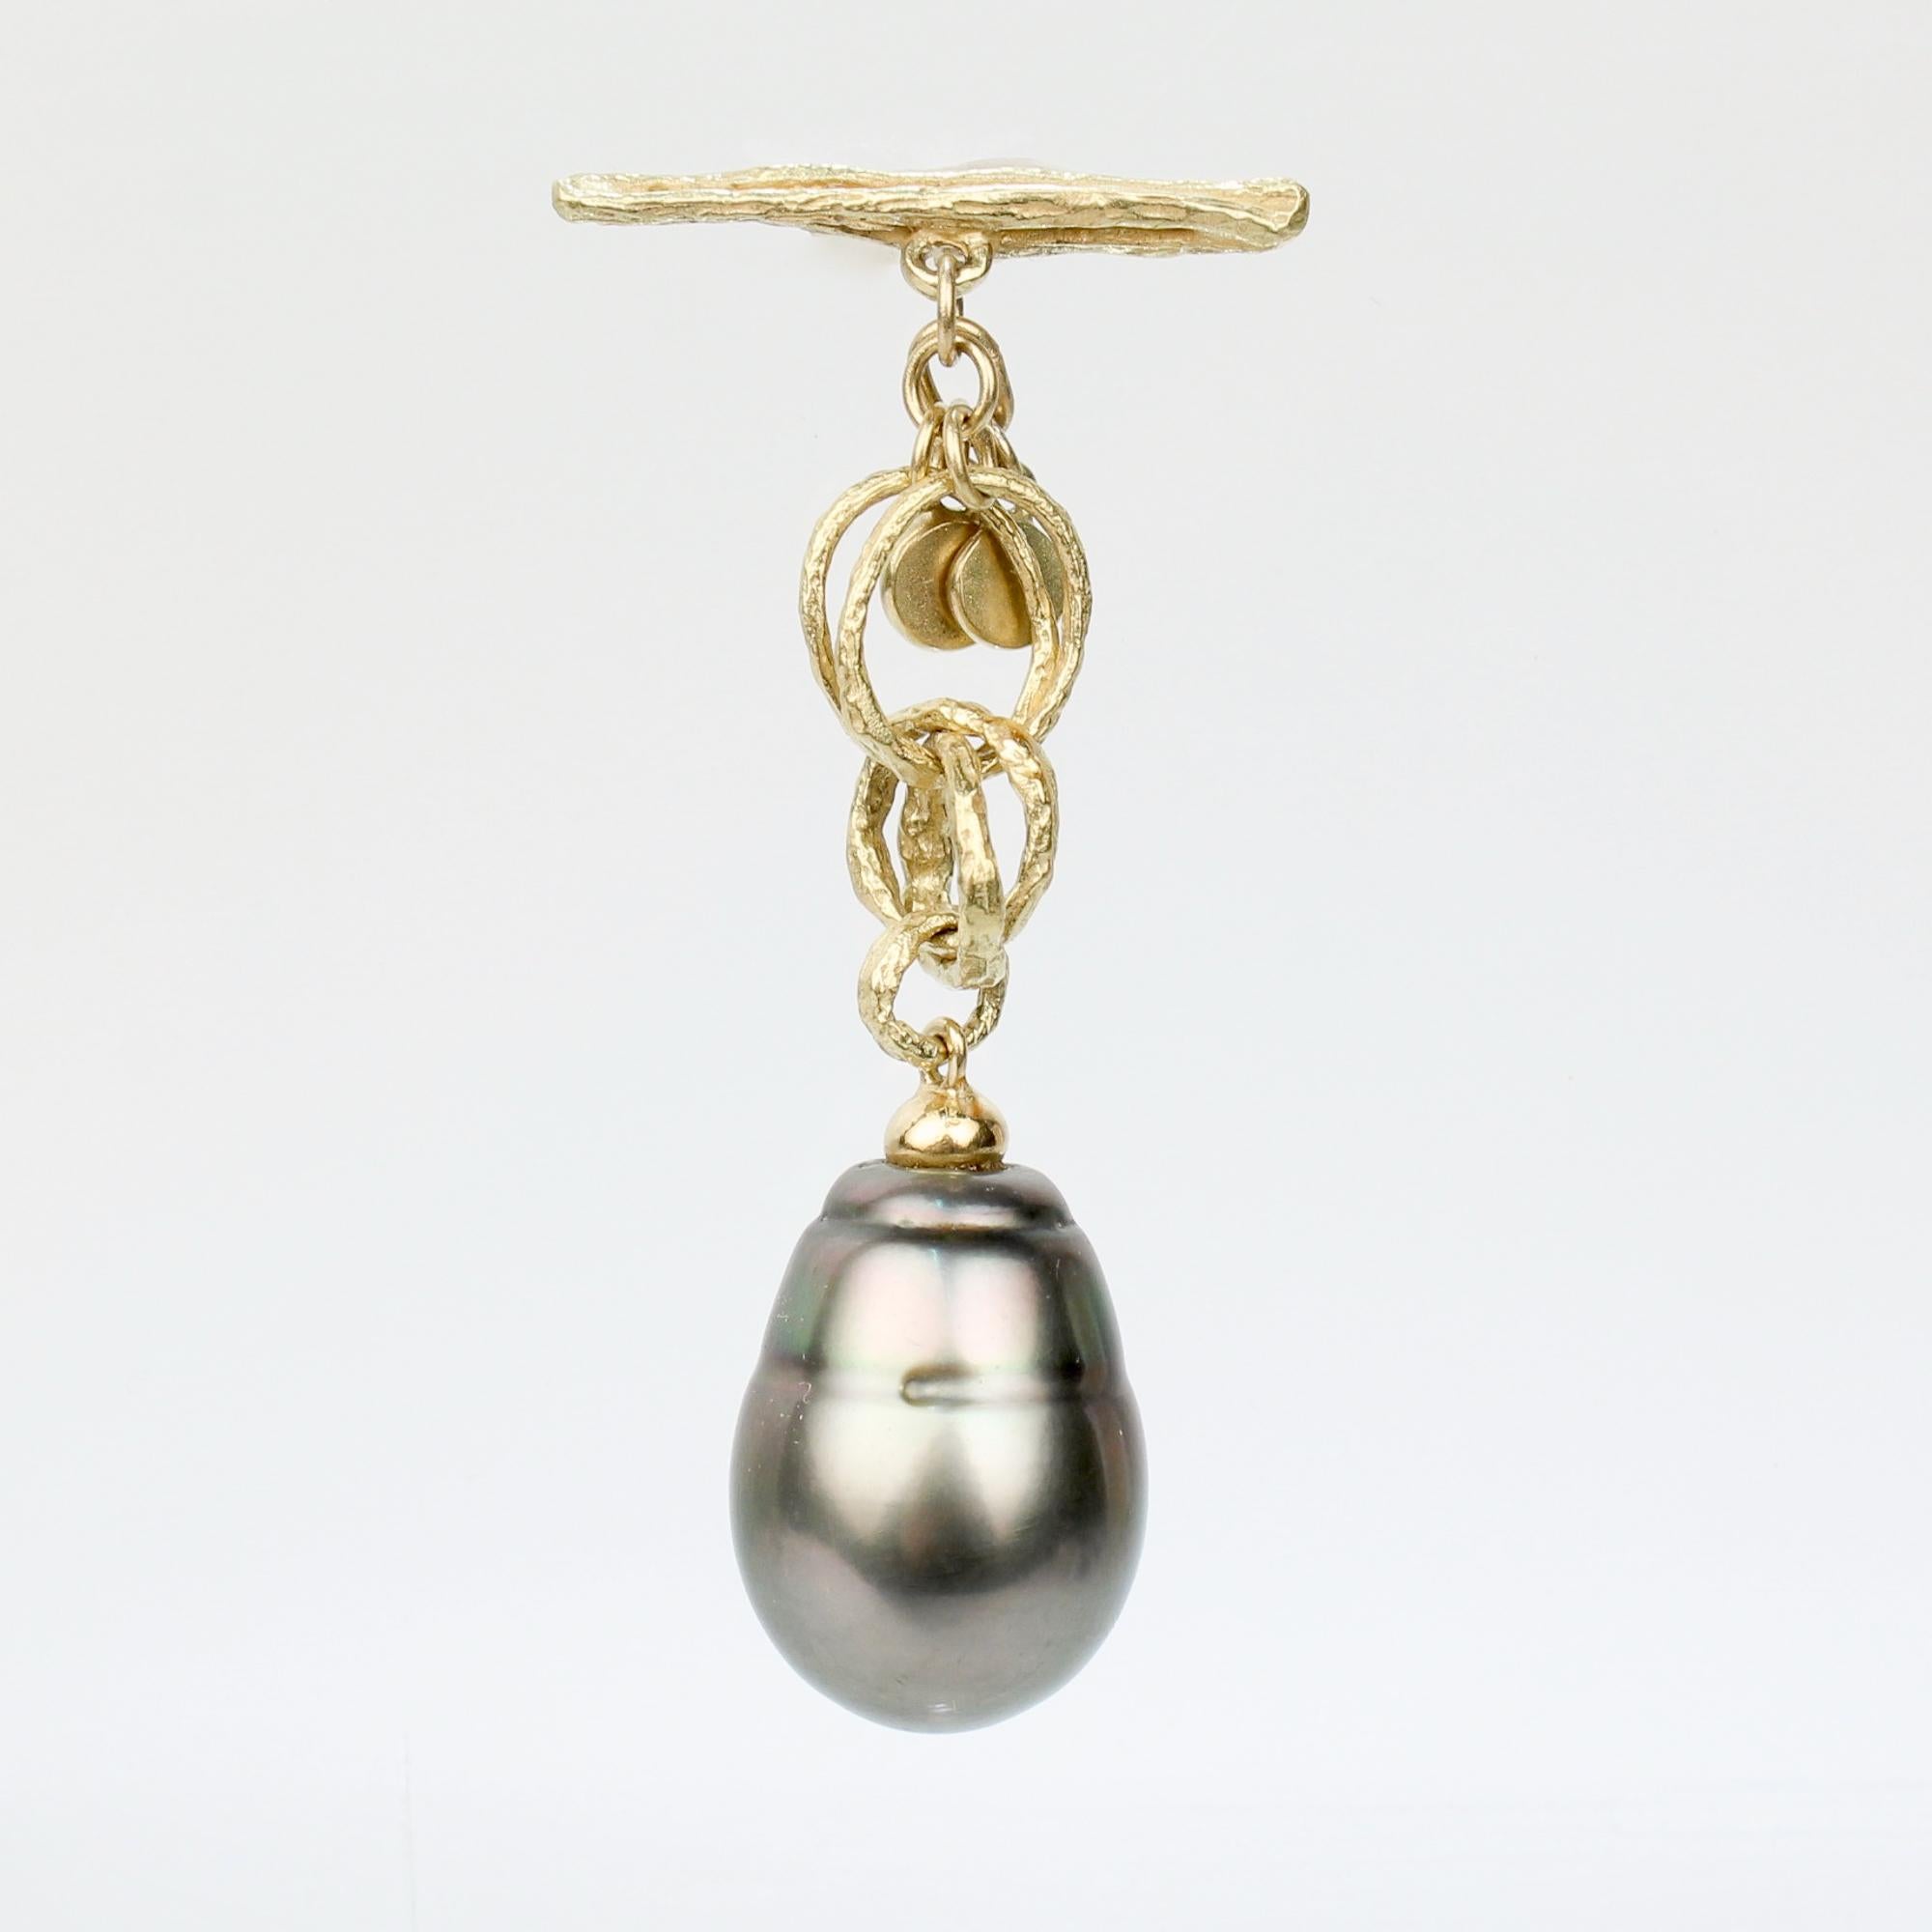 Eine feine Gold & Barock Tahiti-Perle Revers Knopf oder Anhänger.

Aus 18k Gold.

Bestehend aus einem goldenen Knebel, der mit mehreren ineinander greifenden Goldringen verbunden ist und in einer großen barocken Tahiti-Perle endet.

Einfach ein